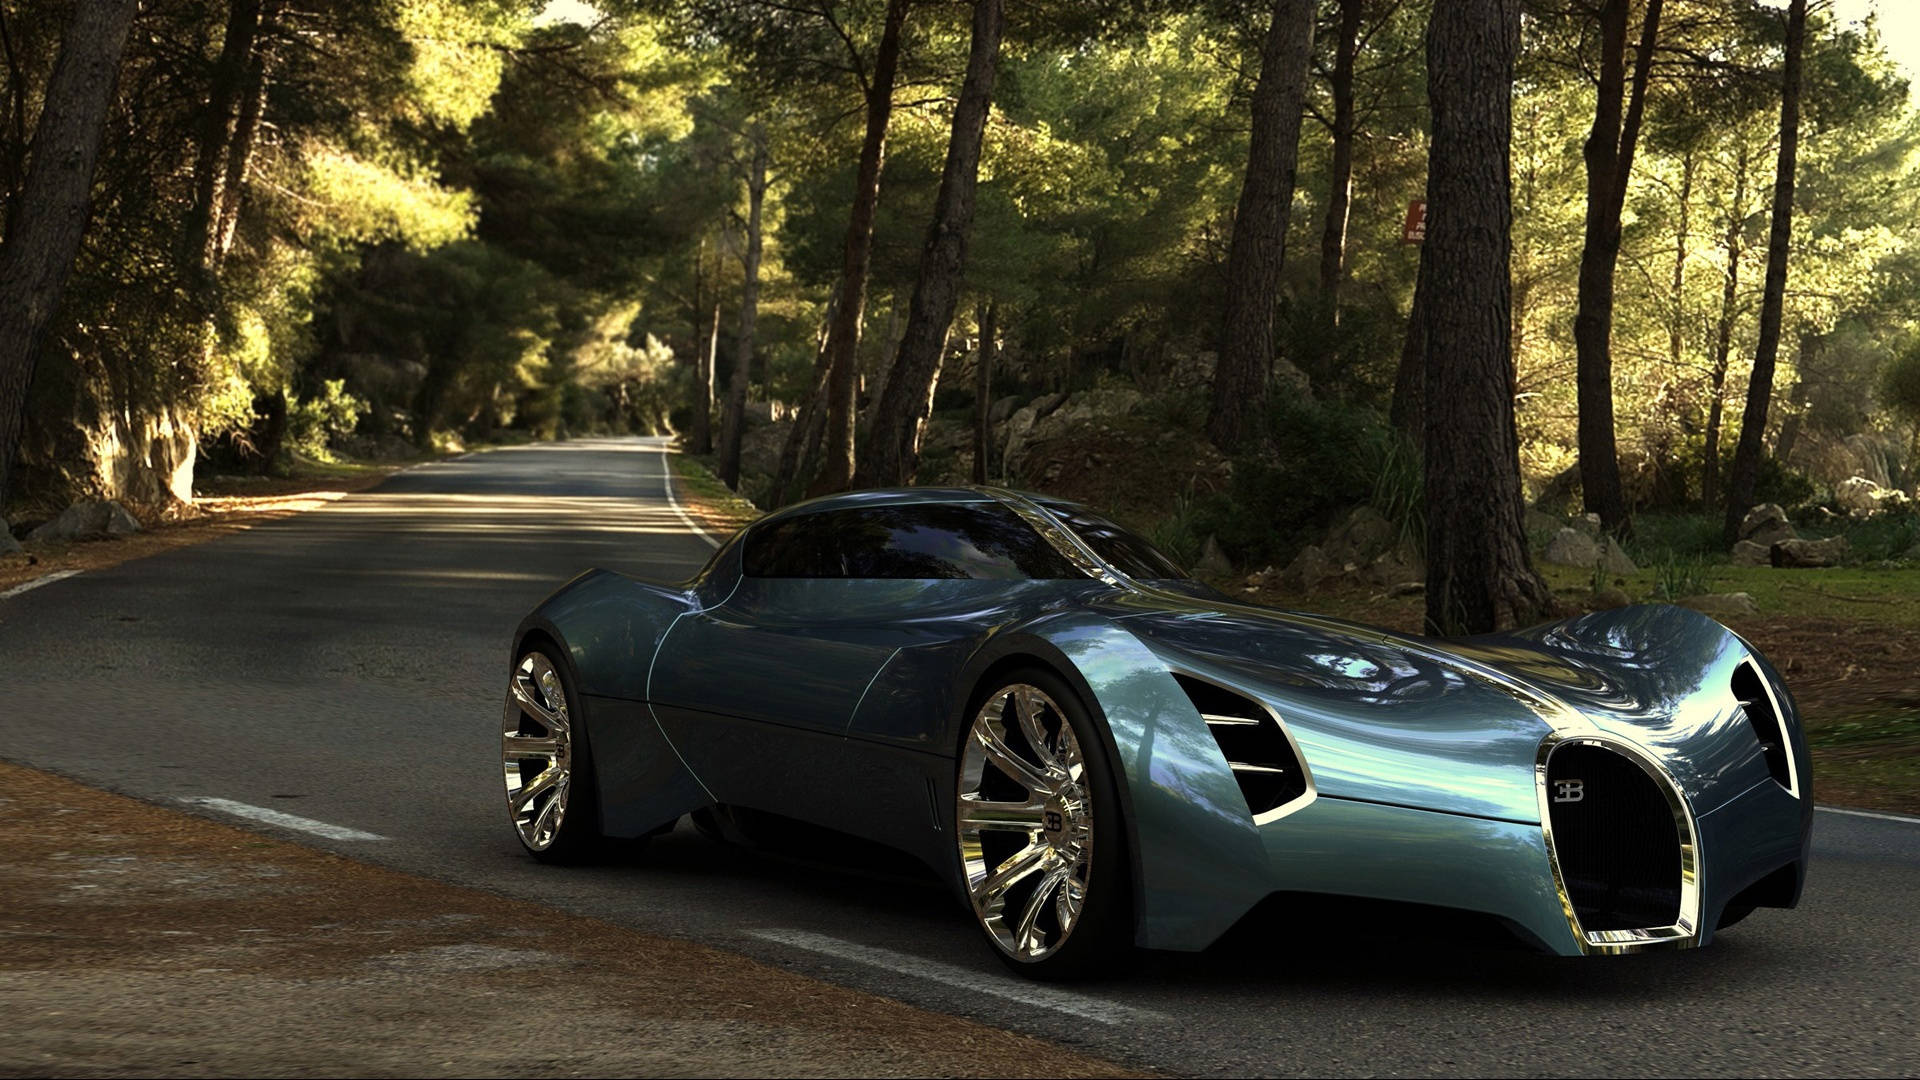 Cool Bugatti Veyron In Teal